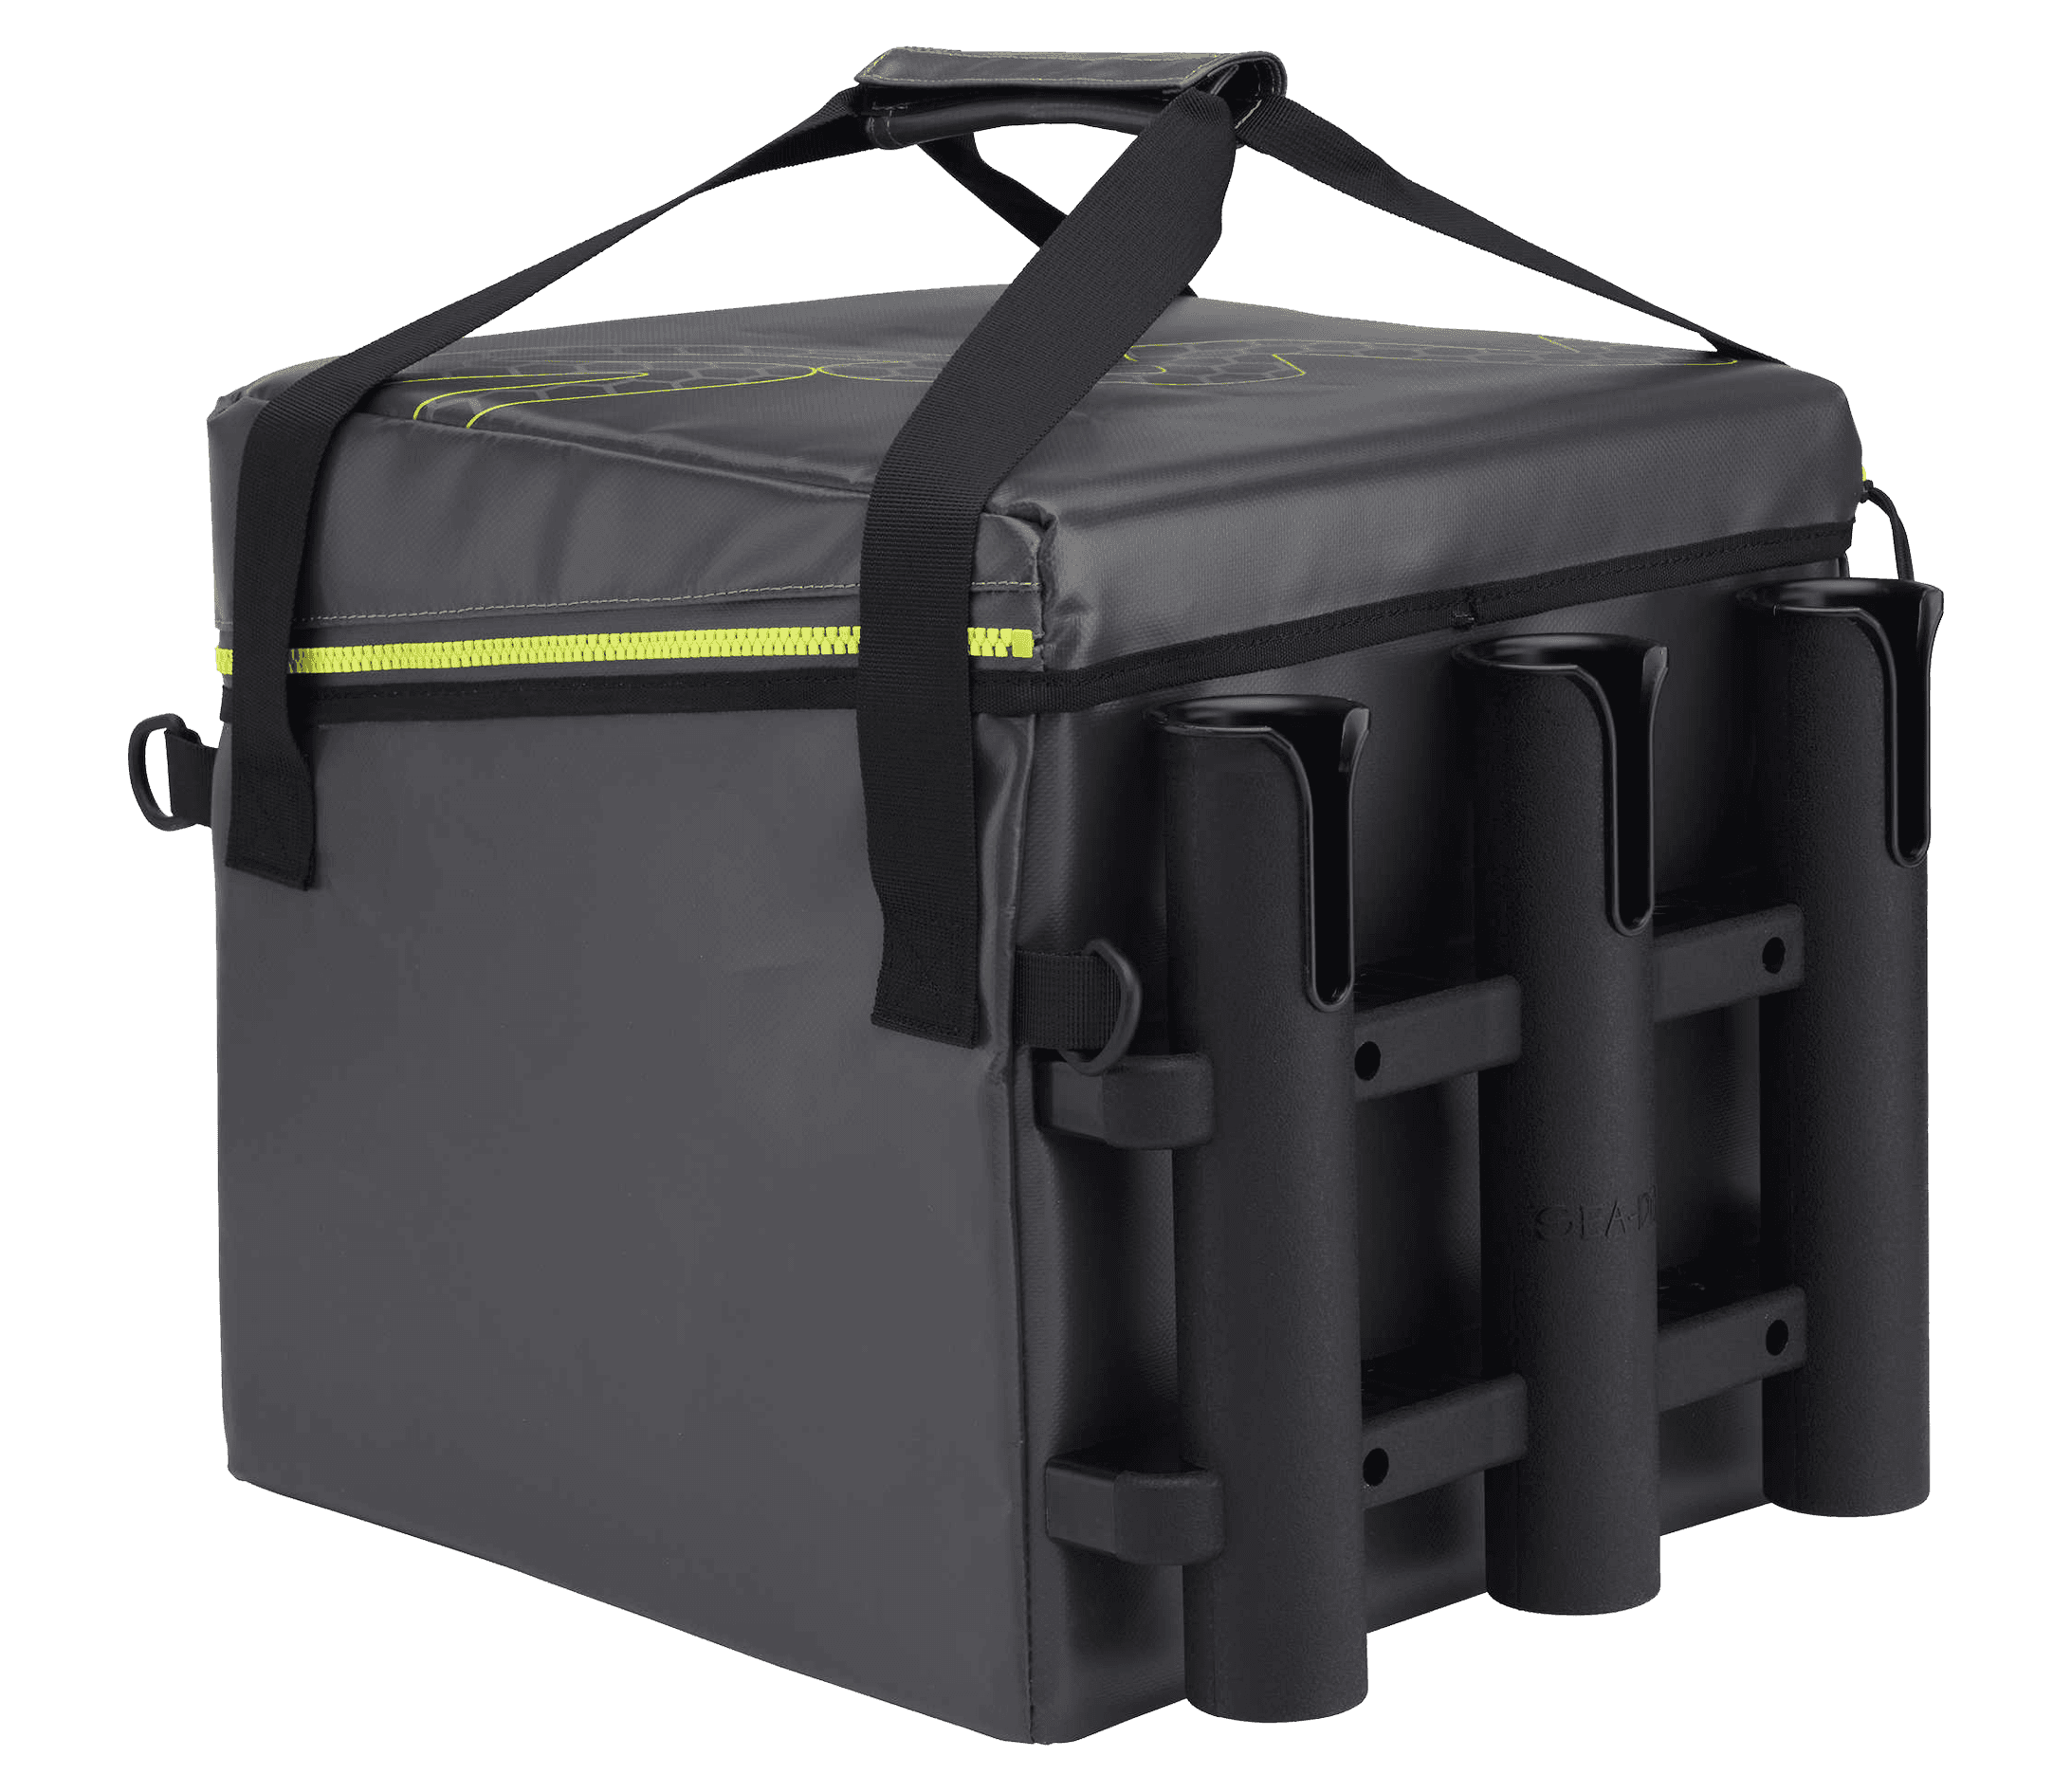 NRS Ambush Tackle Bag Reviews - NRS, Buyers' Guide